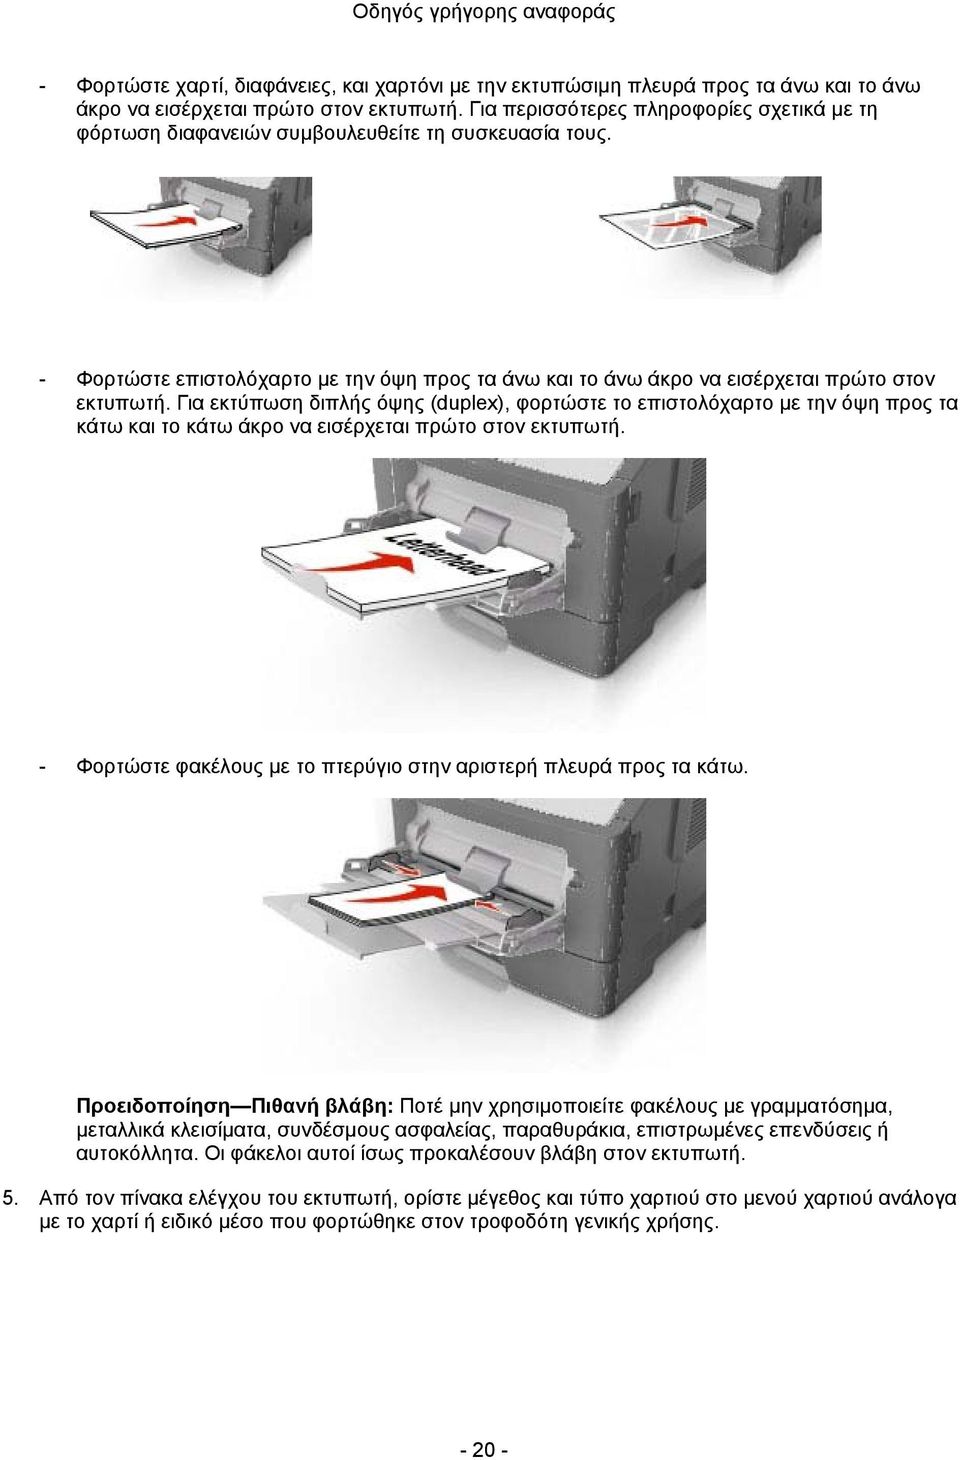 Για εκτύπωση διπλής όψης (duplex), φορτώστε το επιστολόχαρτο με την όψη προς τα κάτω και το κάτω άκρο να εισέρχεται πρώτο στον εκτυπωτή.